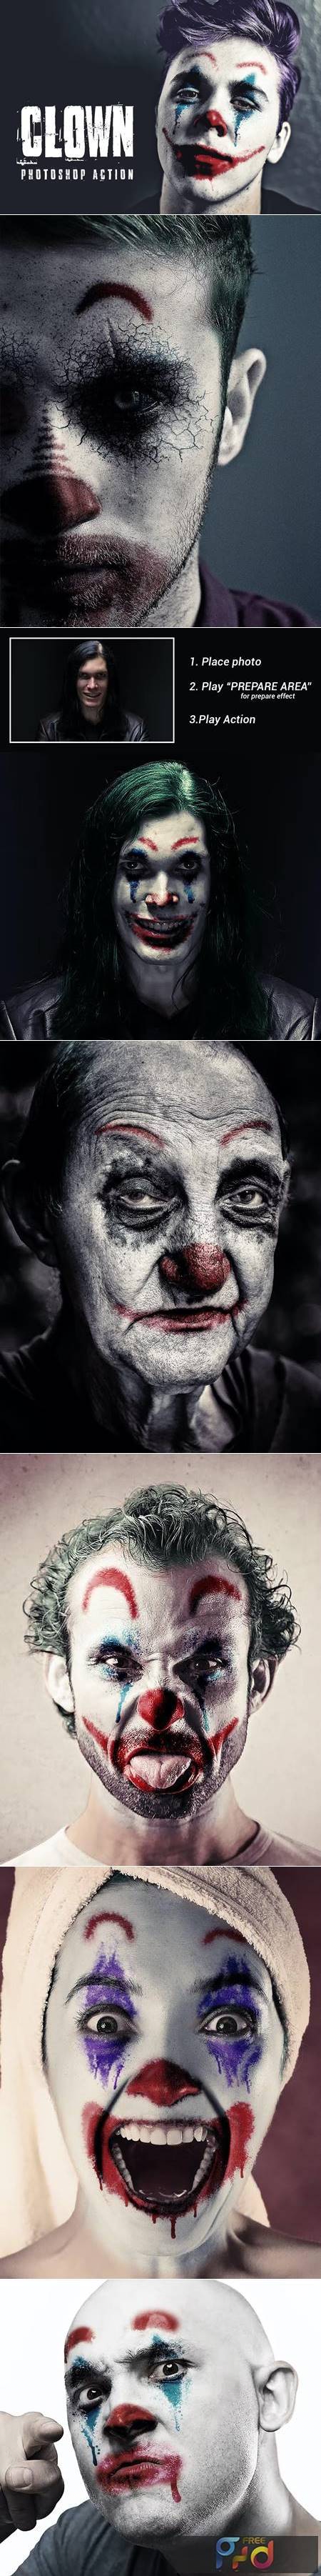 Clown - Photoshop Action SKK6G6H 1